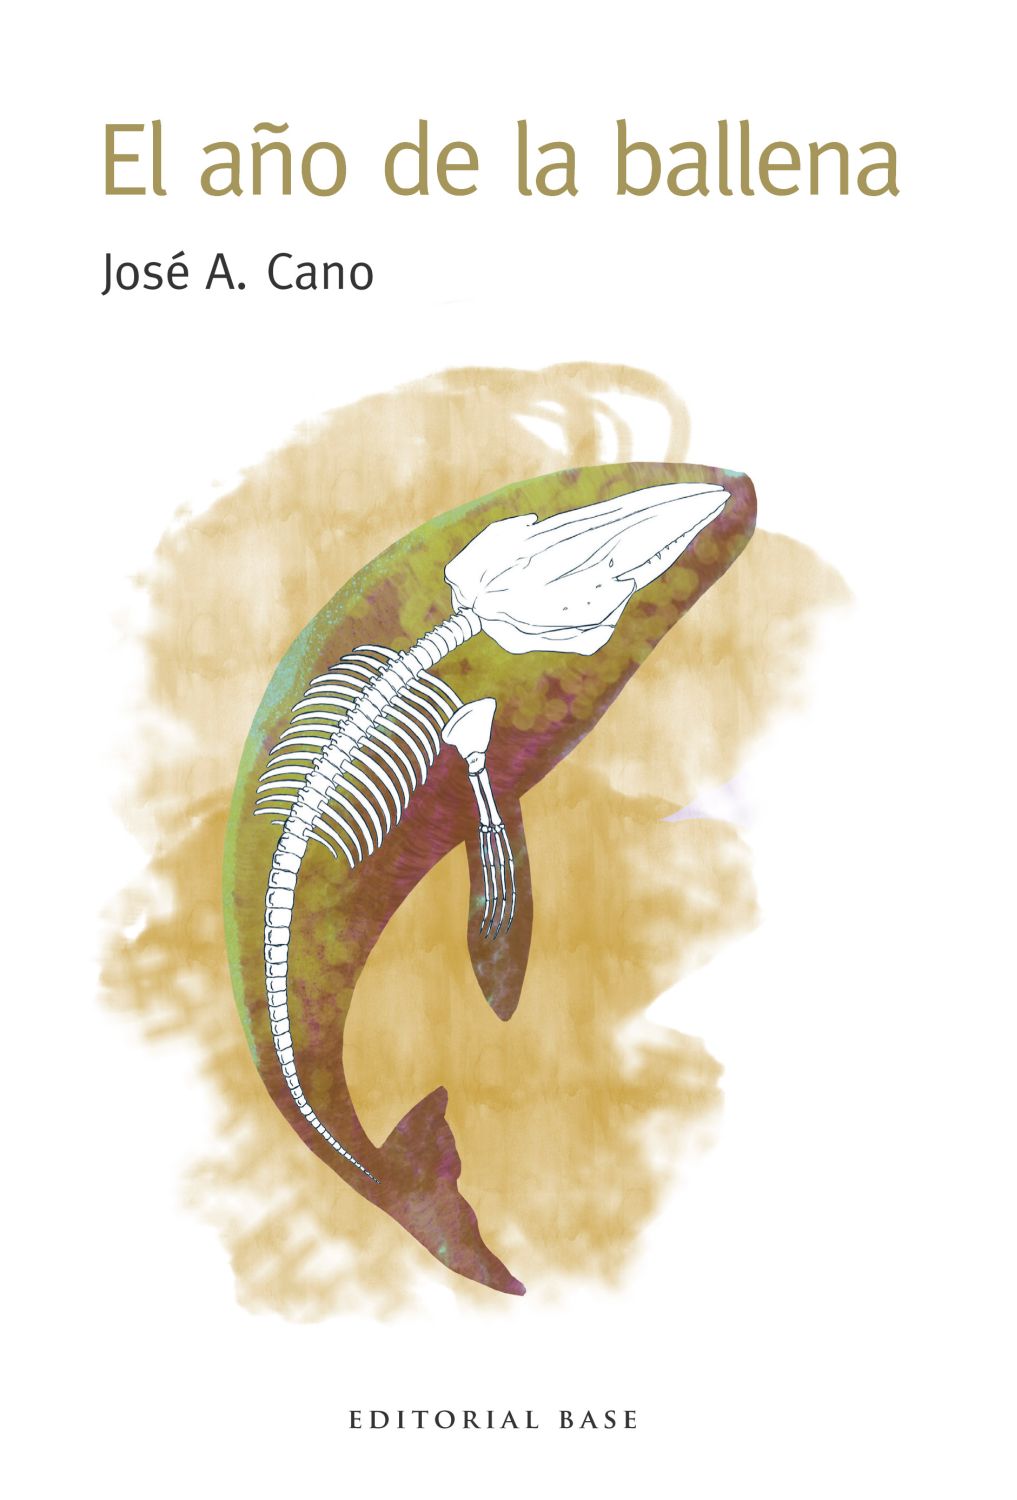 PRESENTACIÓN | José A. Cano presenta El año de la ballena